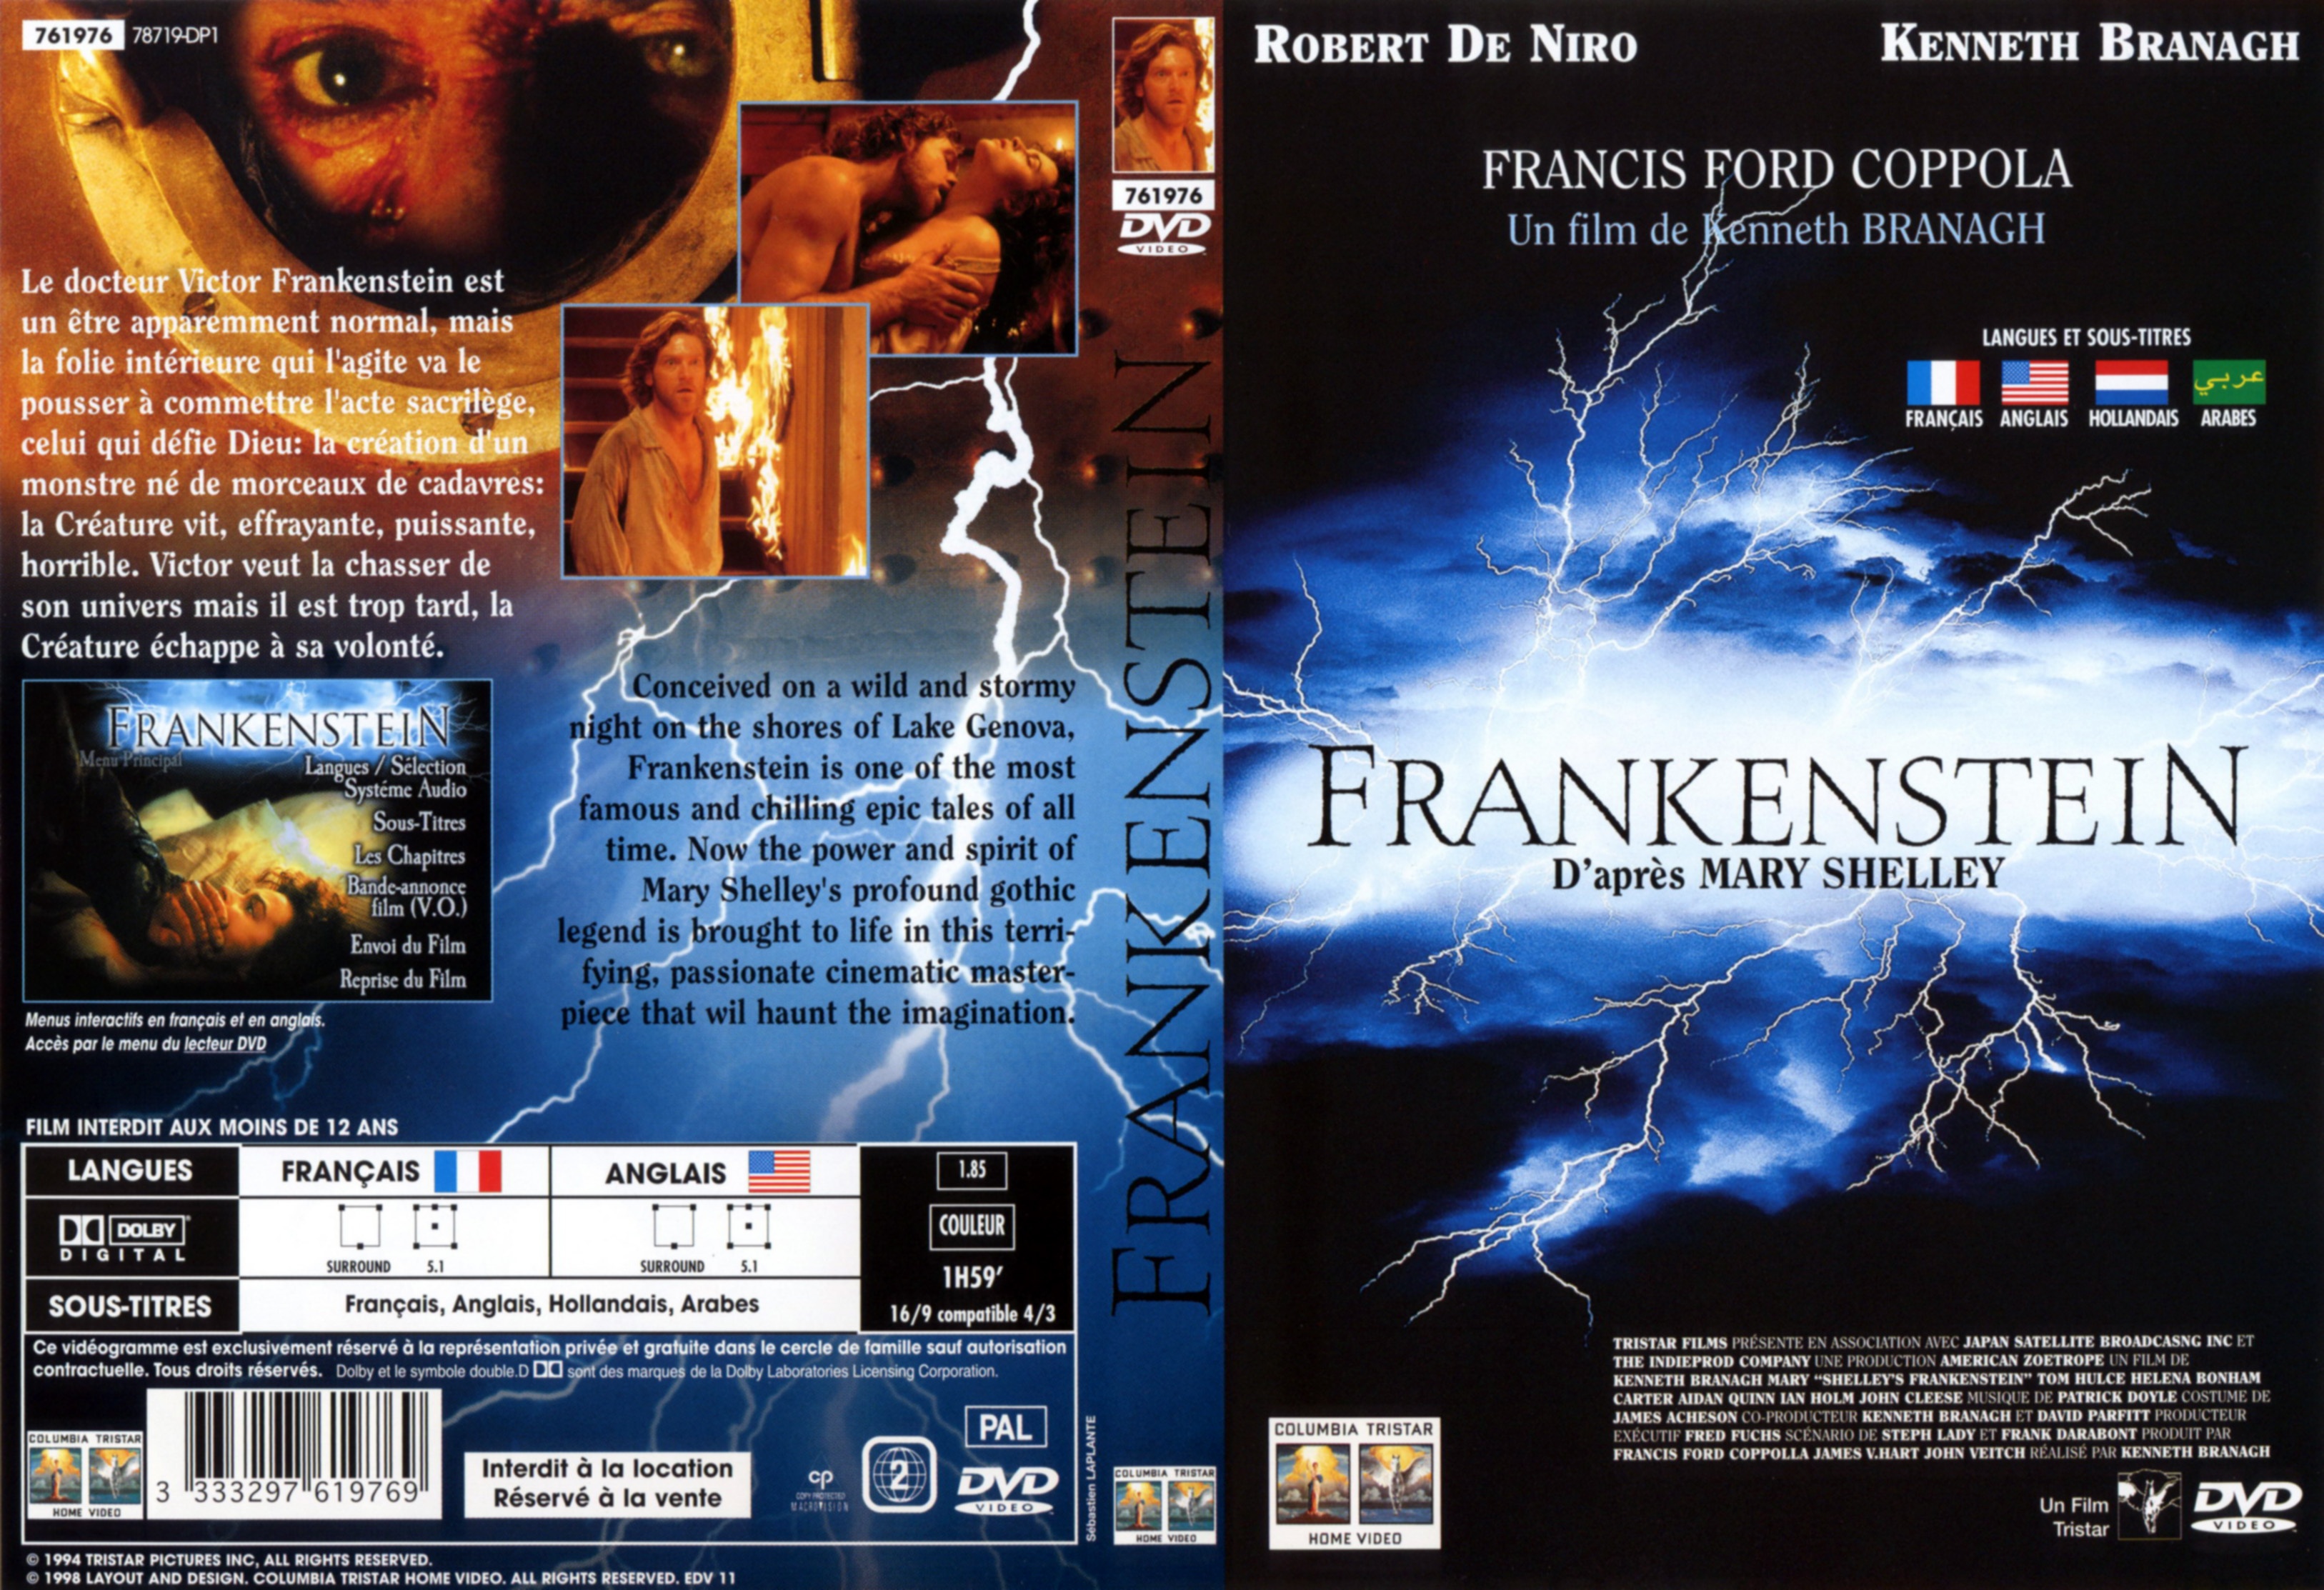 Jaquette DVD Frankenstein (Robert De Niro) v2